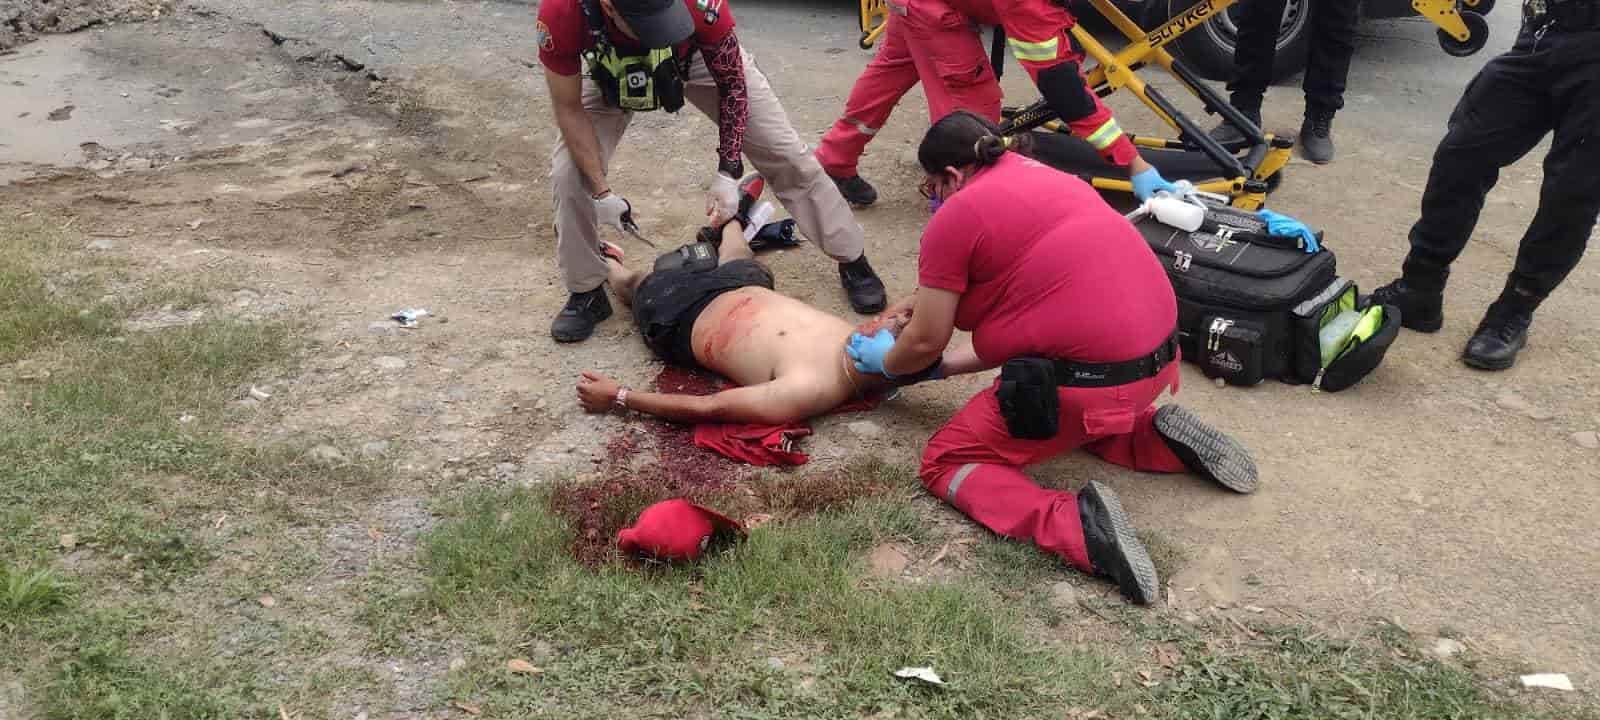 Luego de  bajarlo de un  vehículo un hombre fue atacado a balazos quedando gravemente lesionado, los agresores se dieron a la fuga, en Santiago